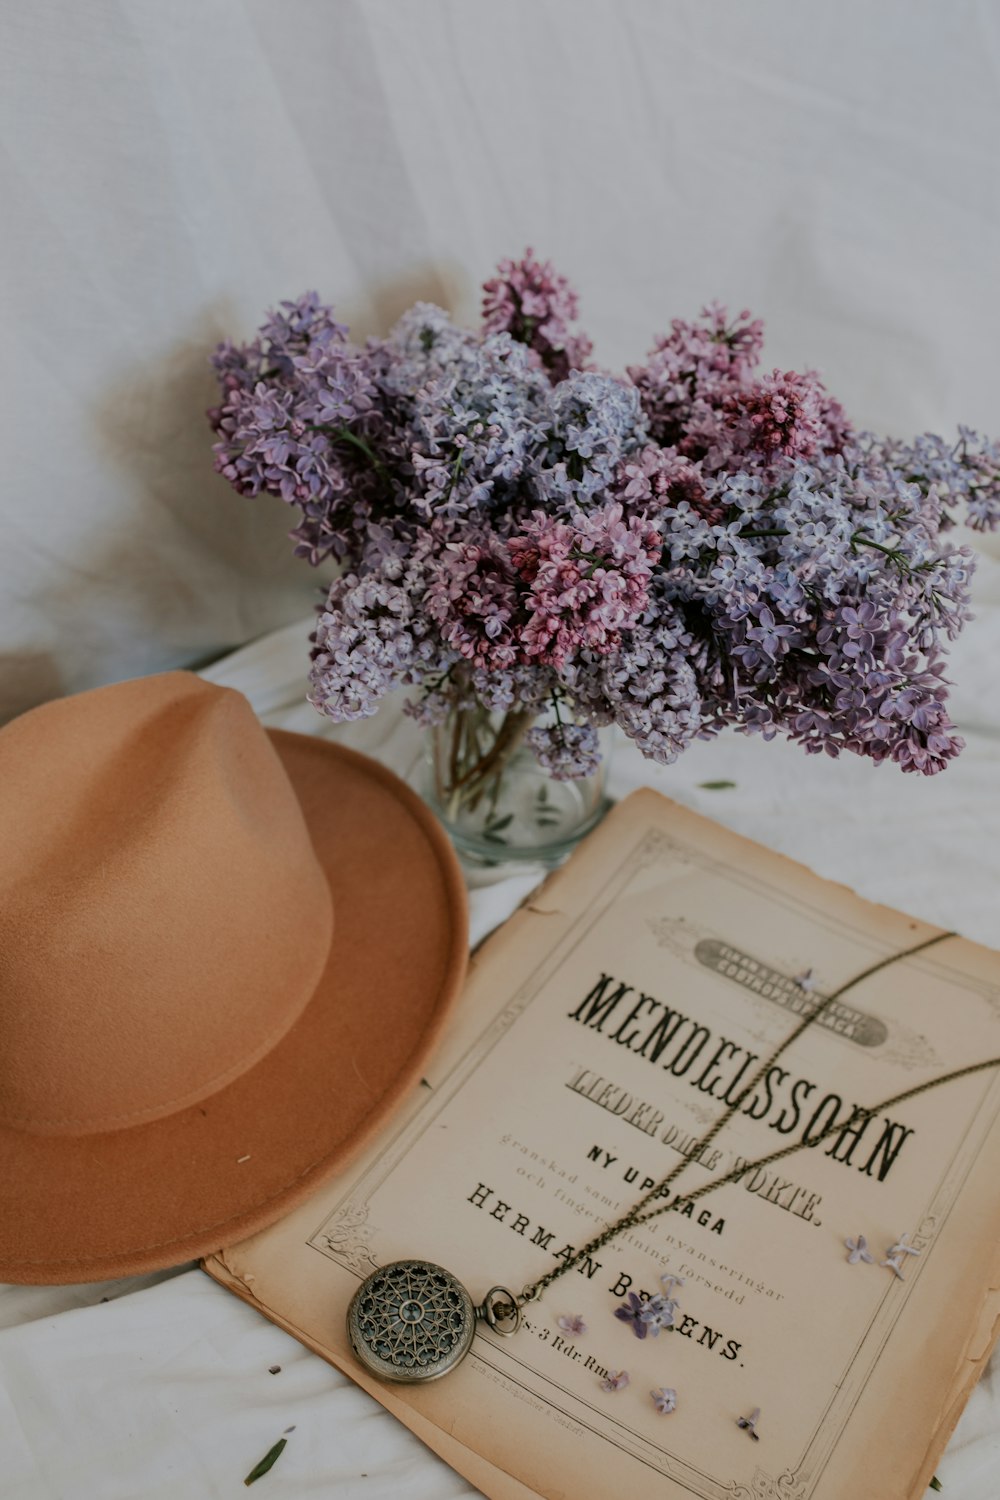 brown cowboy hat beside purple flowers